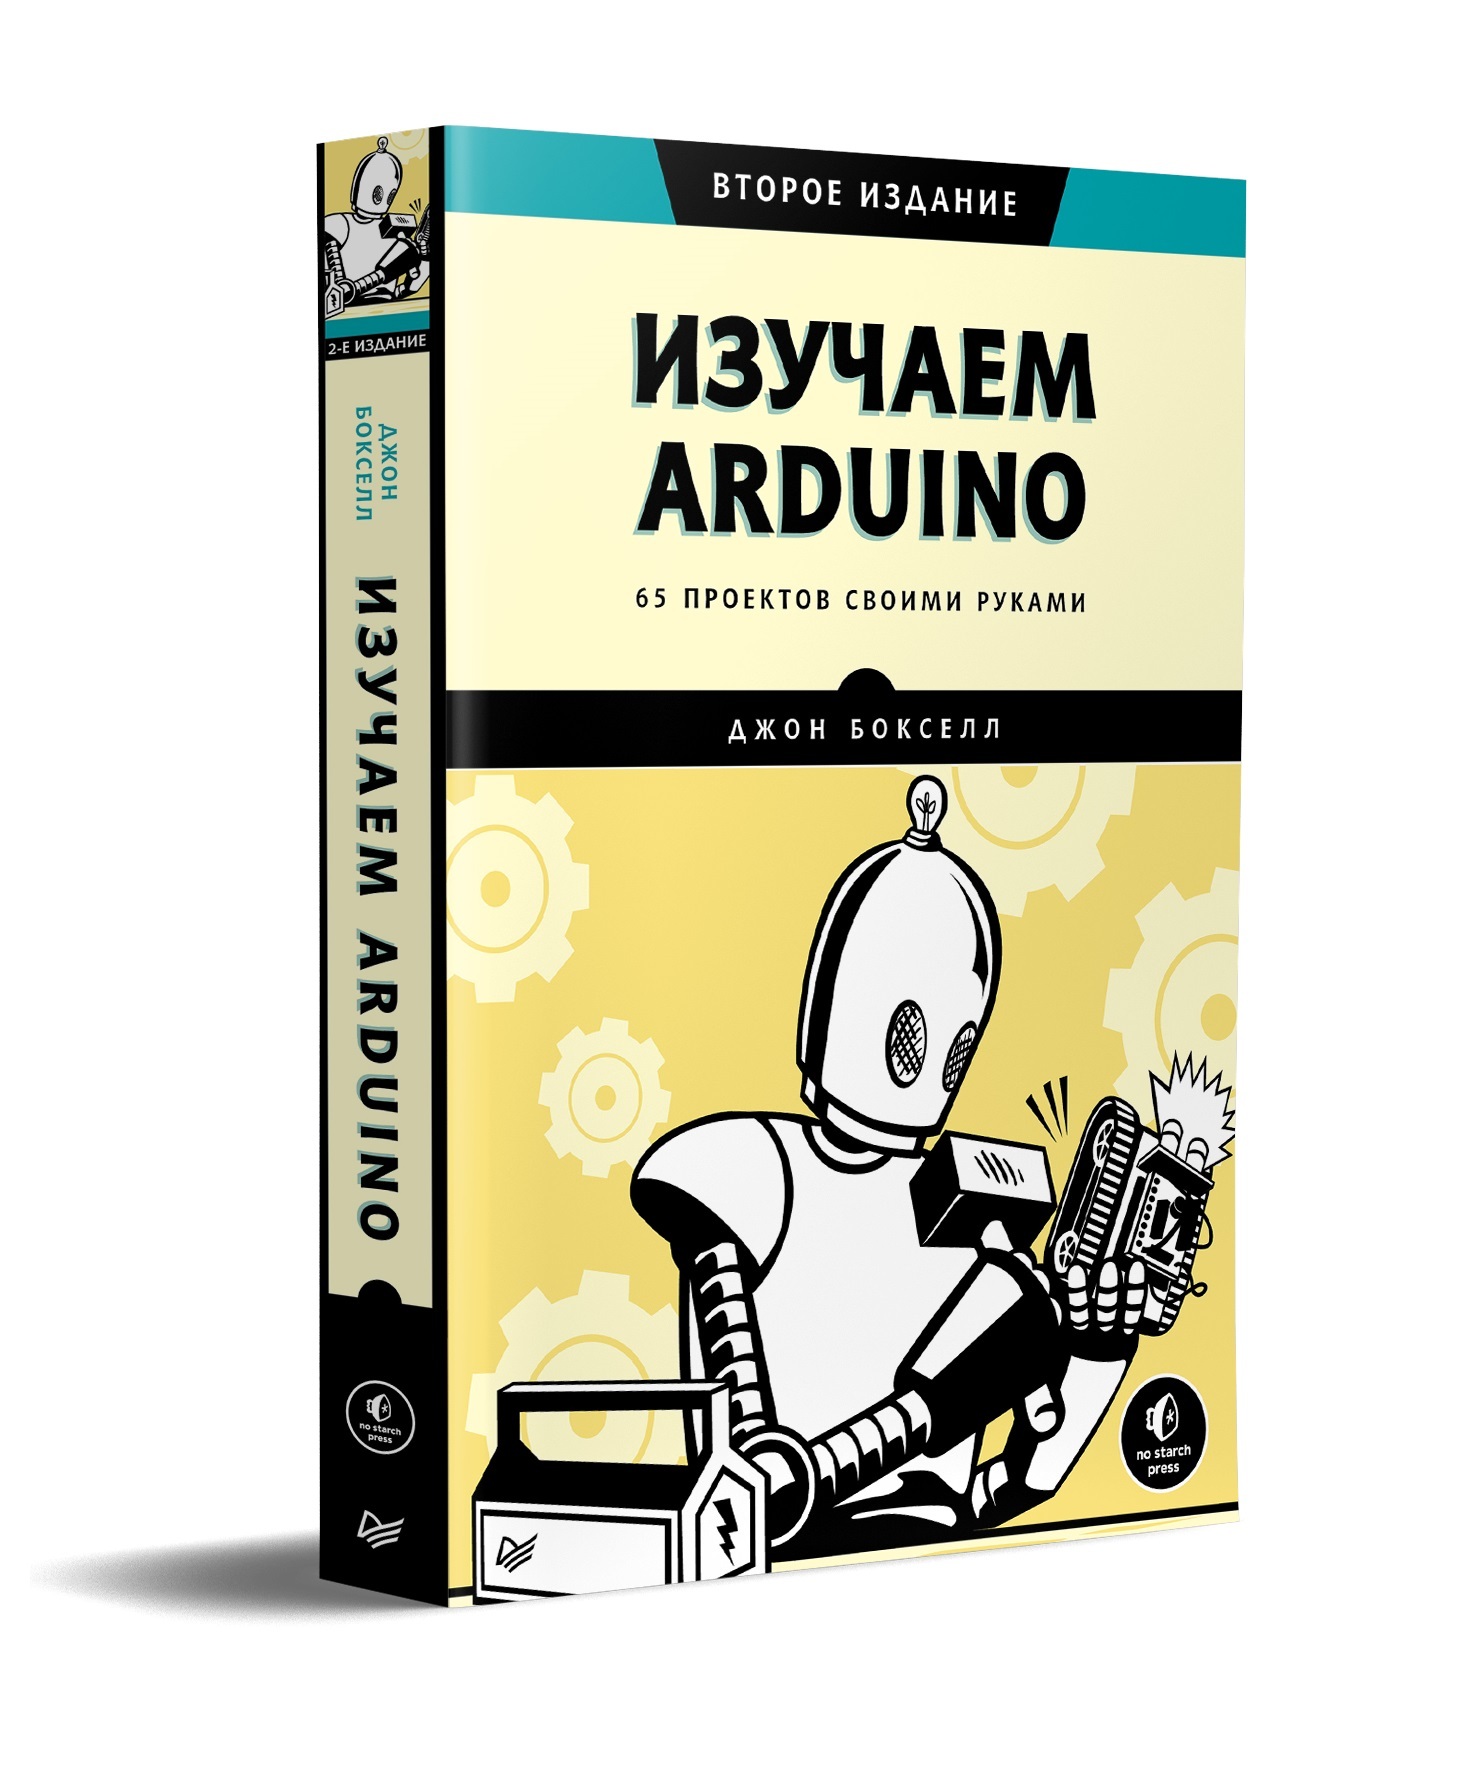 Бейктал Дж. - Конструируем роботов на Arduino. Первые шаги (РОБОФИШКИ) - 2016